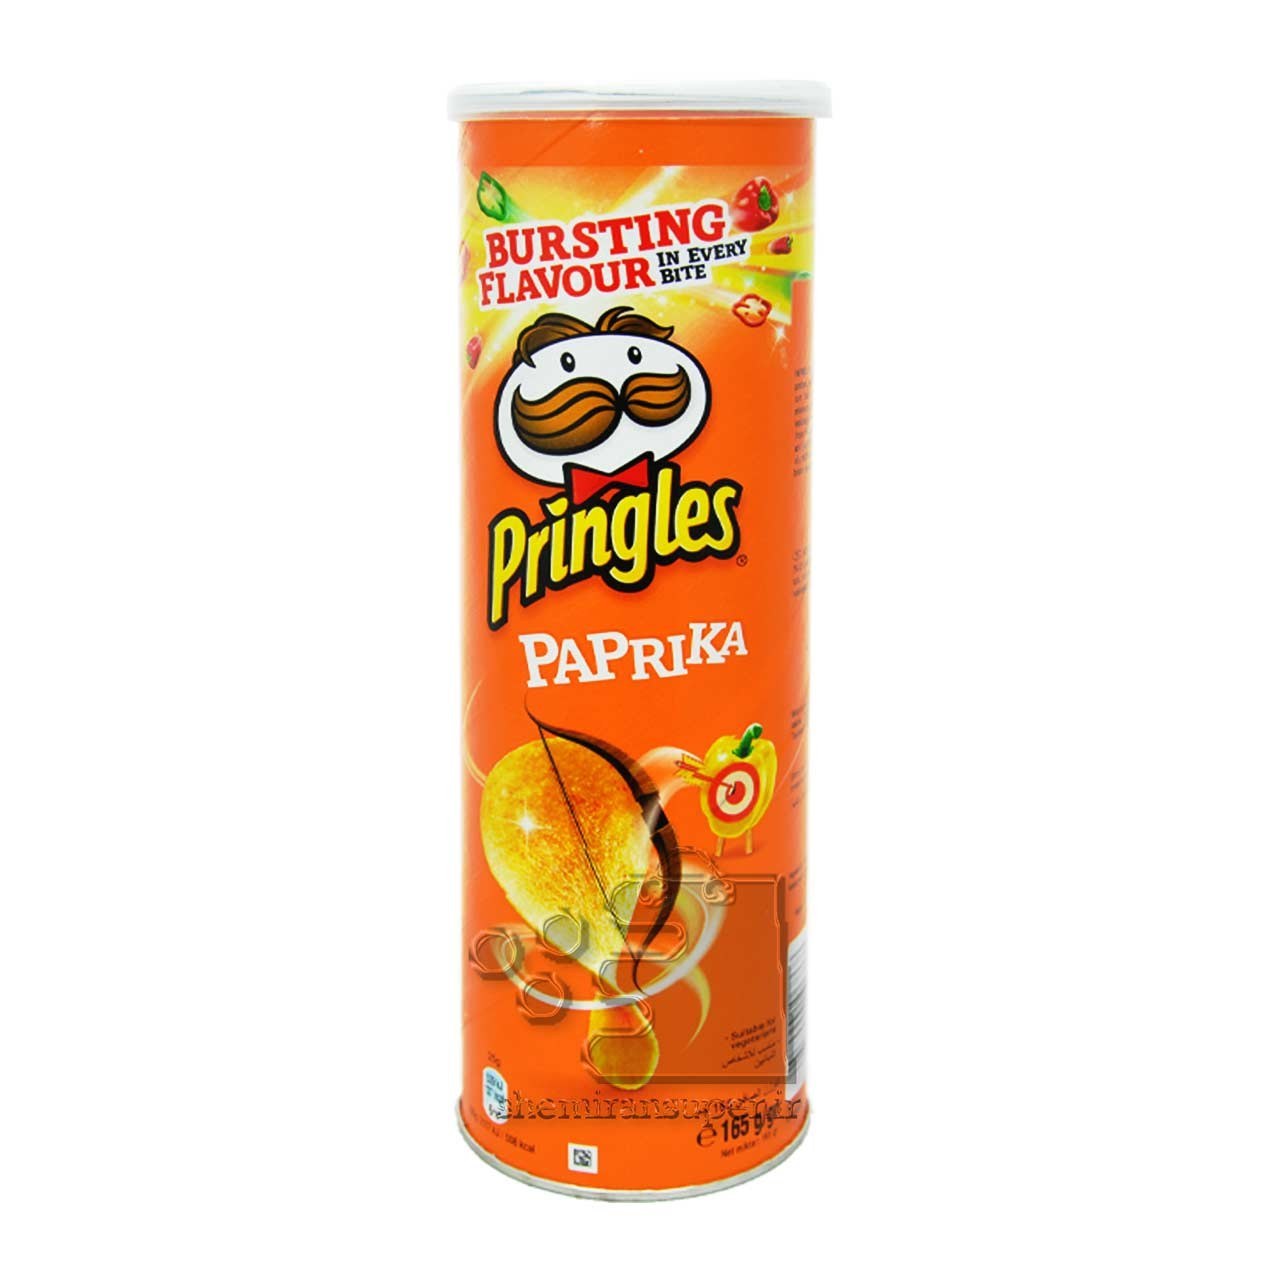 تصویر چیپس پرینگلز با طعم فلفل پاپریکا وزن 165 گرم ا Pringles Paprika Pringles Paprika